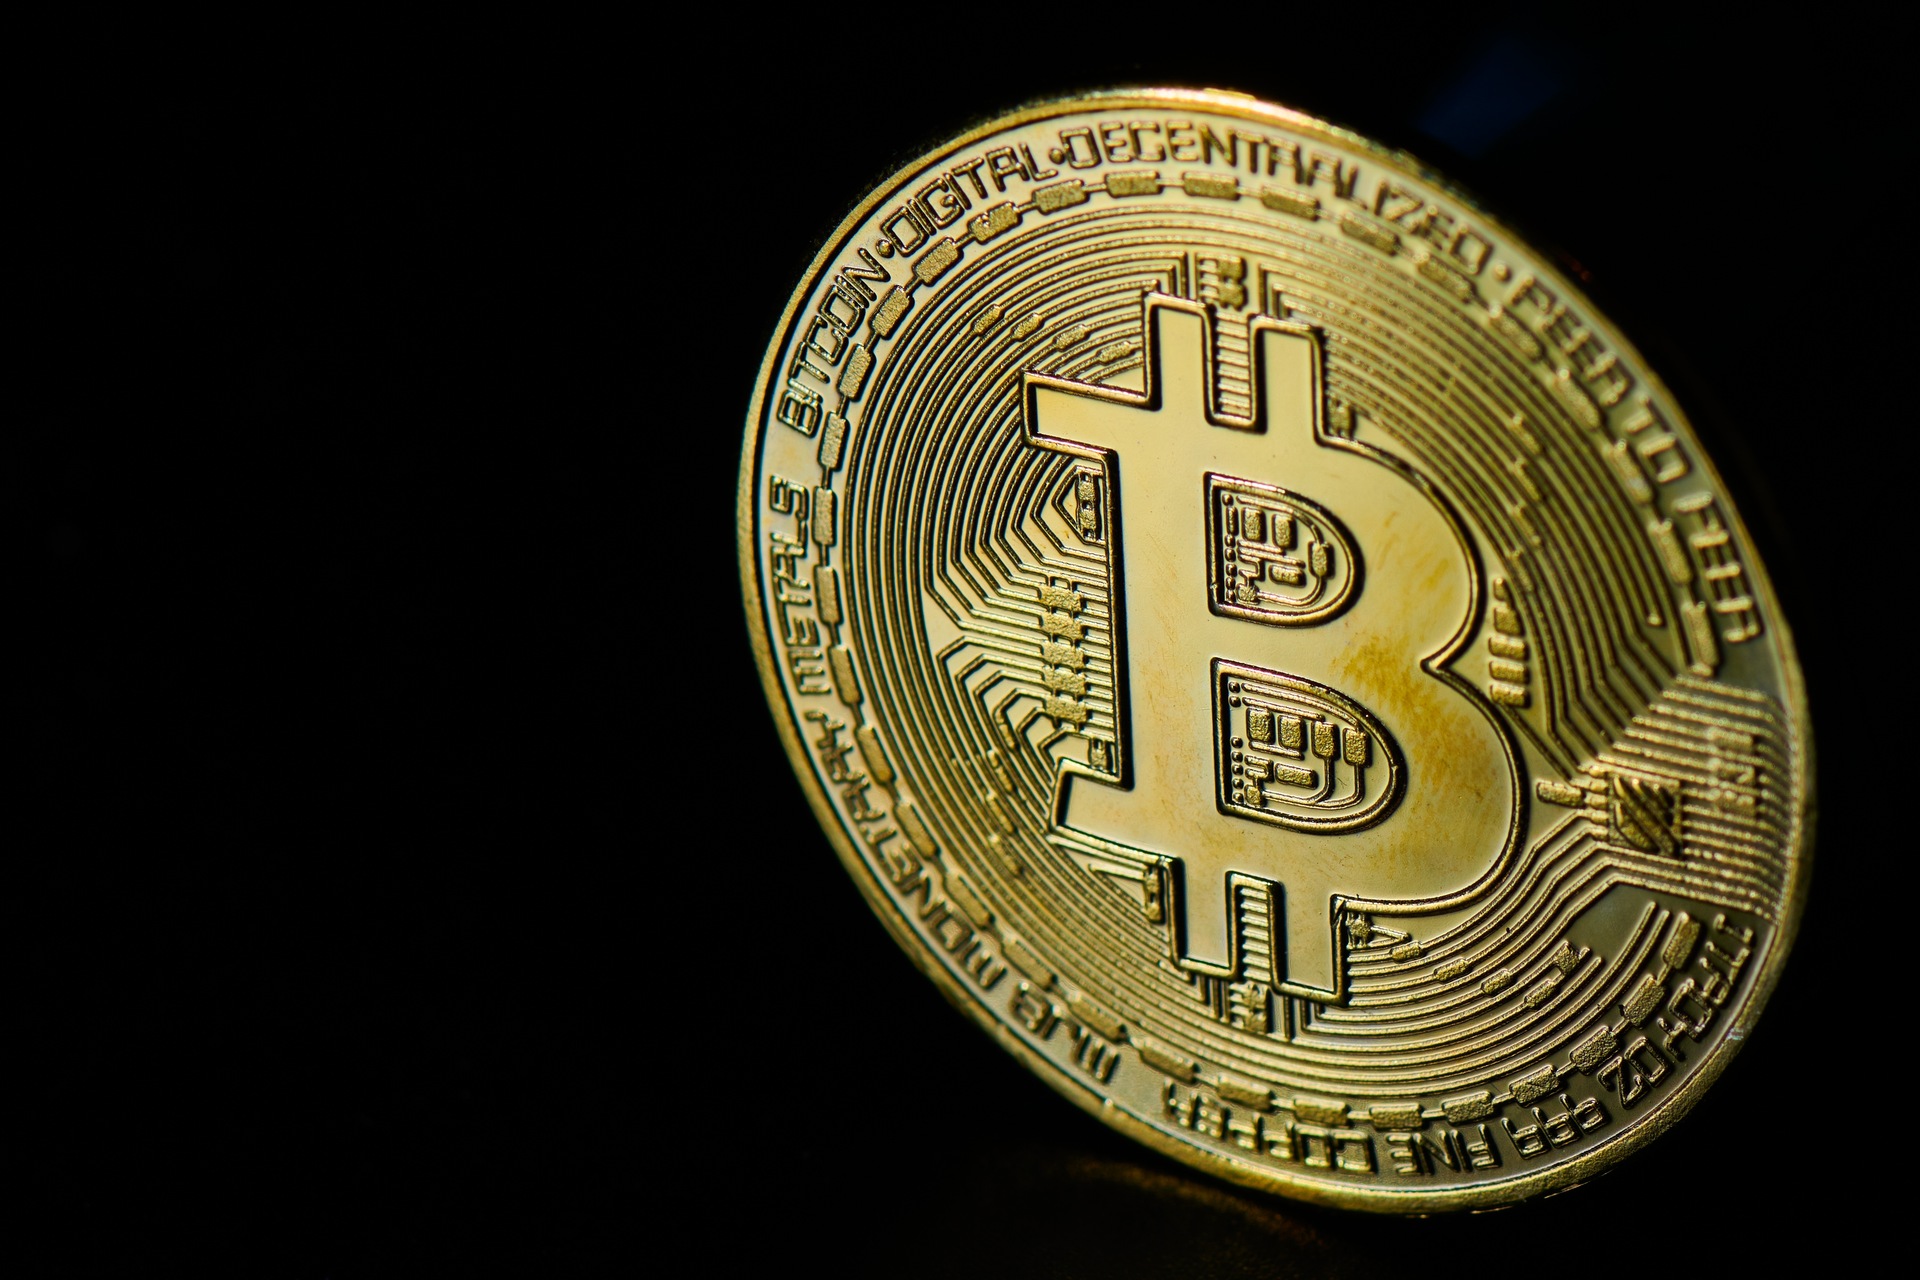 Kryptovaluutat: Bitcoin on kryptovaluutta ja kansainvälinen valuuttamaksujärjestelmä, jonka loi vuonna 2009 anonyymi keksijä, joka tunnetaan salanimellä "Satoshi Nakamoto", joka kehitti idean, jonka hän esitteli Internetissä vuoden 2008 lopulla.